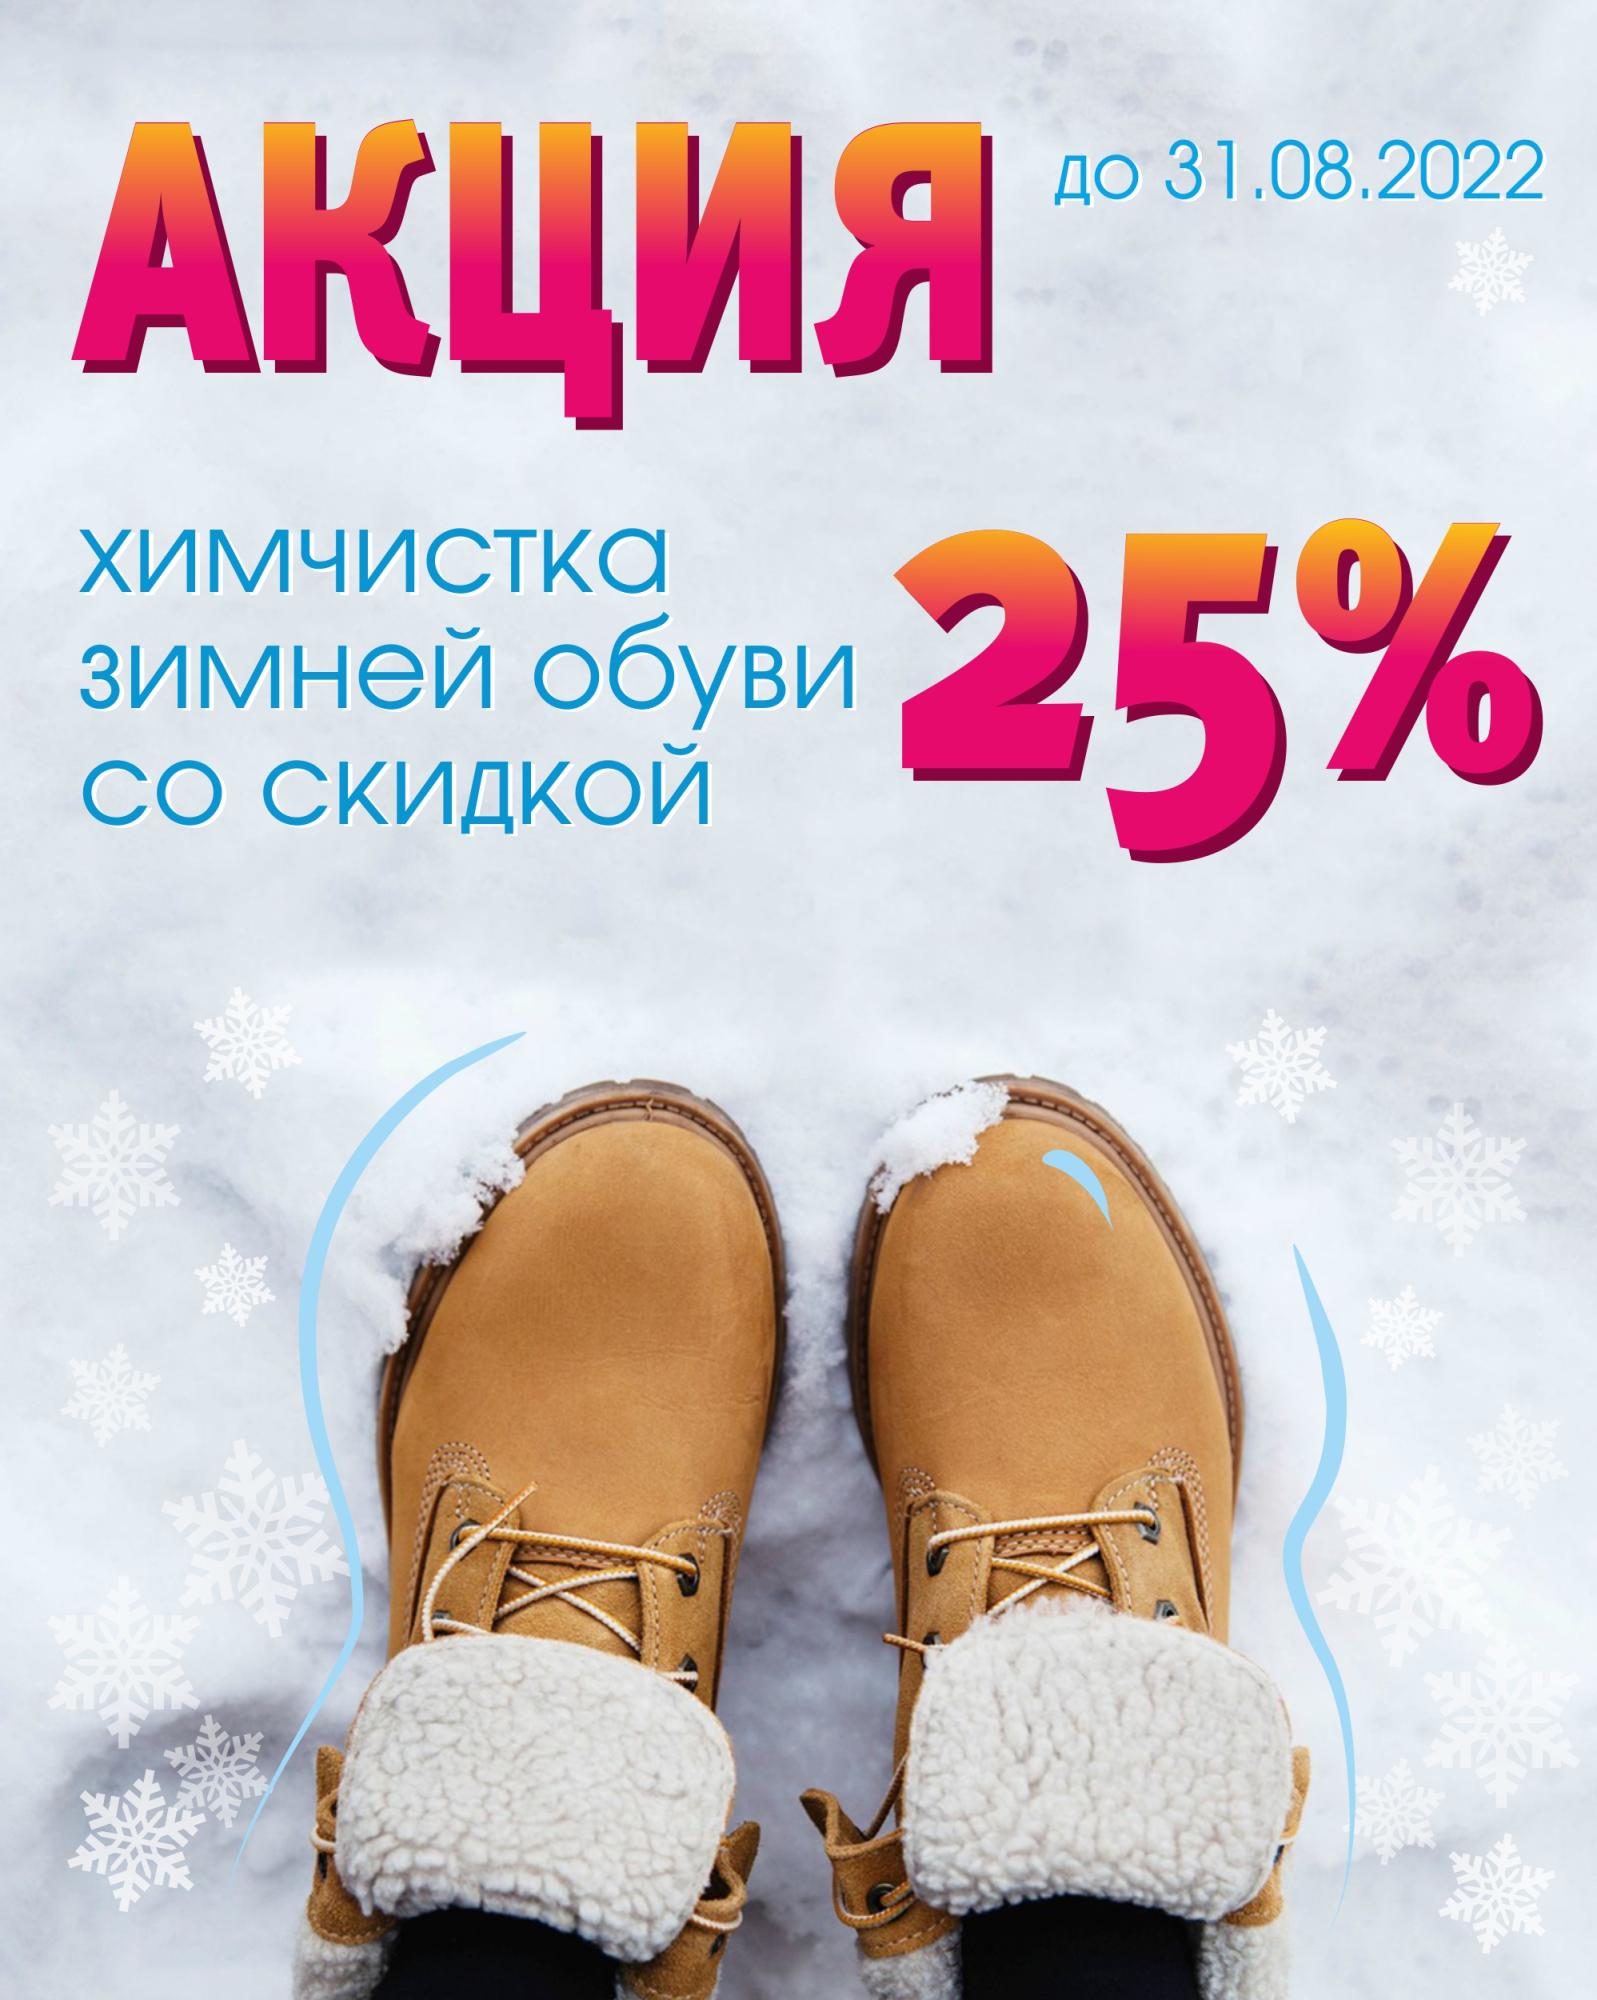 Химчистка зимней обуви со скидкой 25%